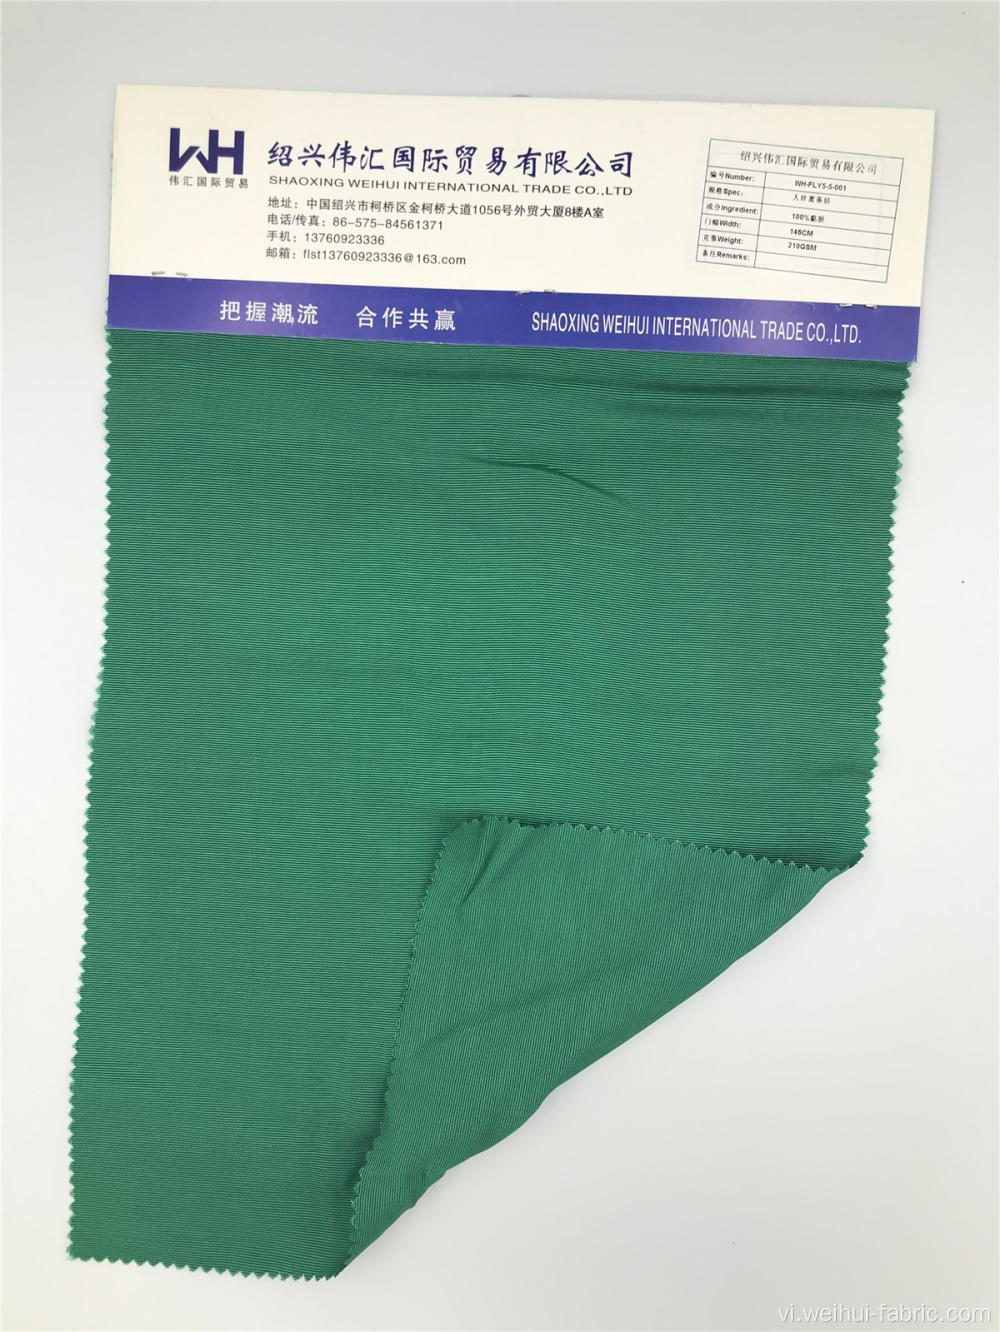 Vải dệt thoi 100% Viscose màu xanh lá cây chất lượng cao